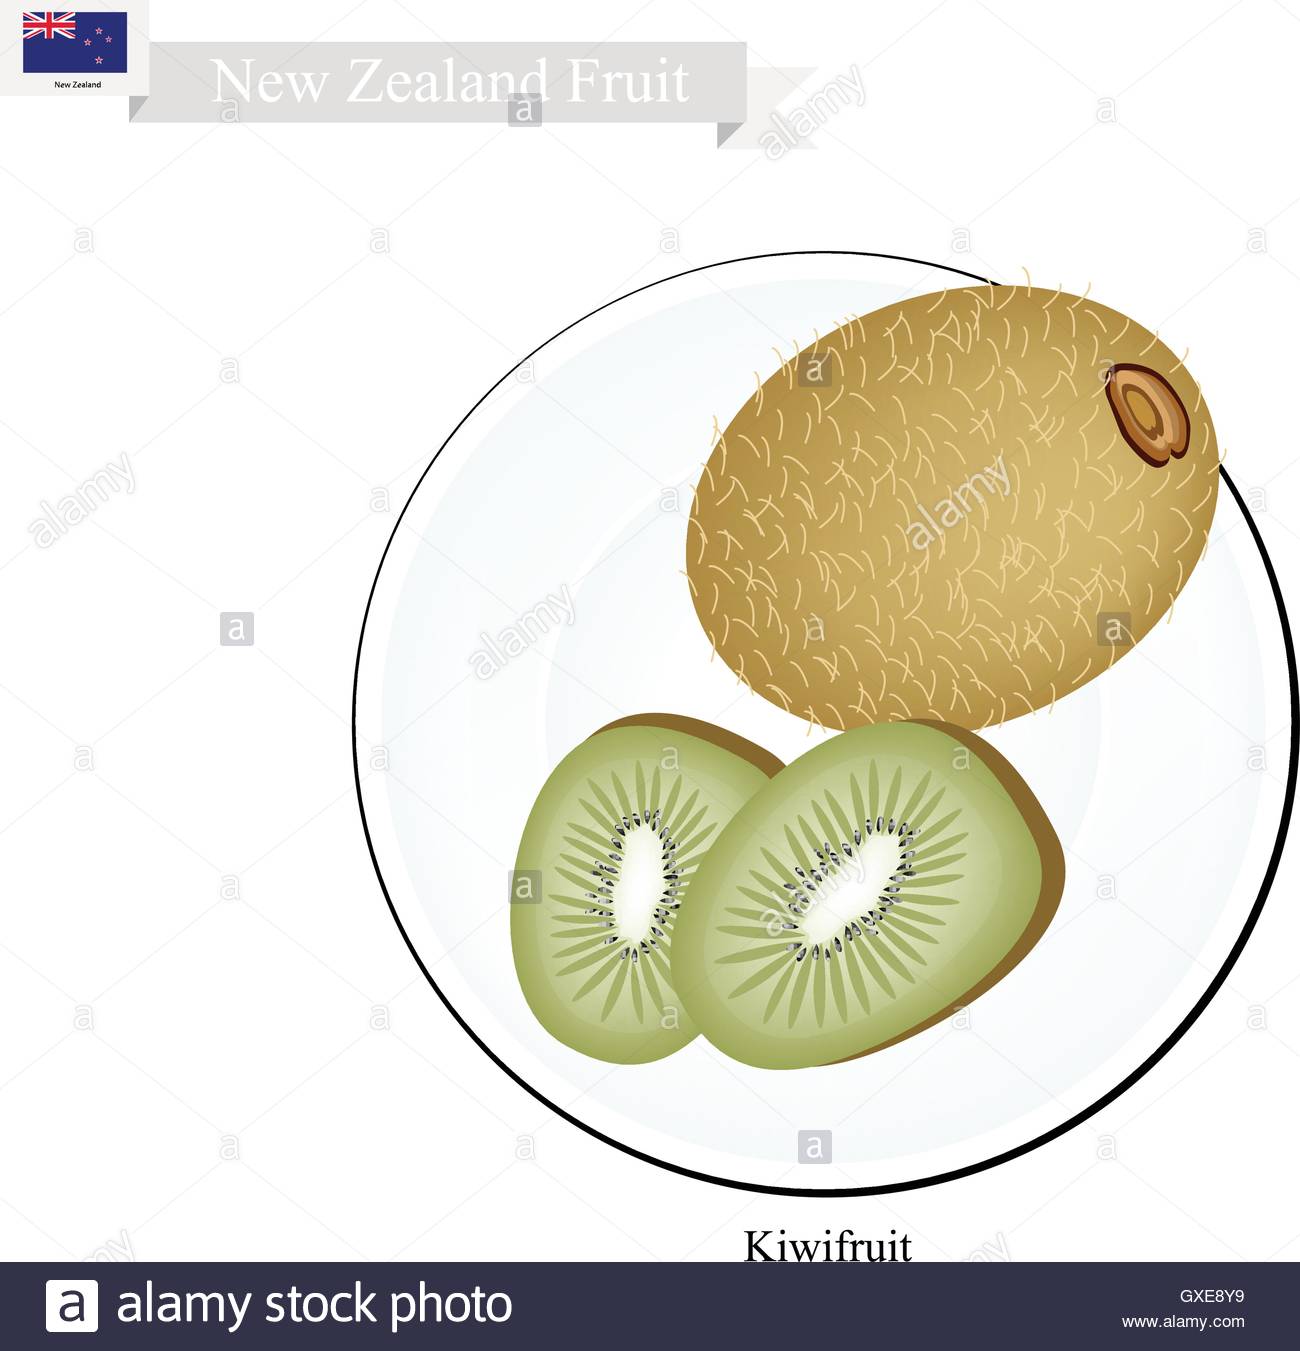 New Zealand Fruit, Illustration Of Kiwifruit Or Chinese Gooseberry.